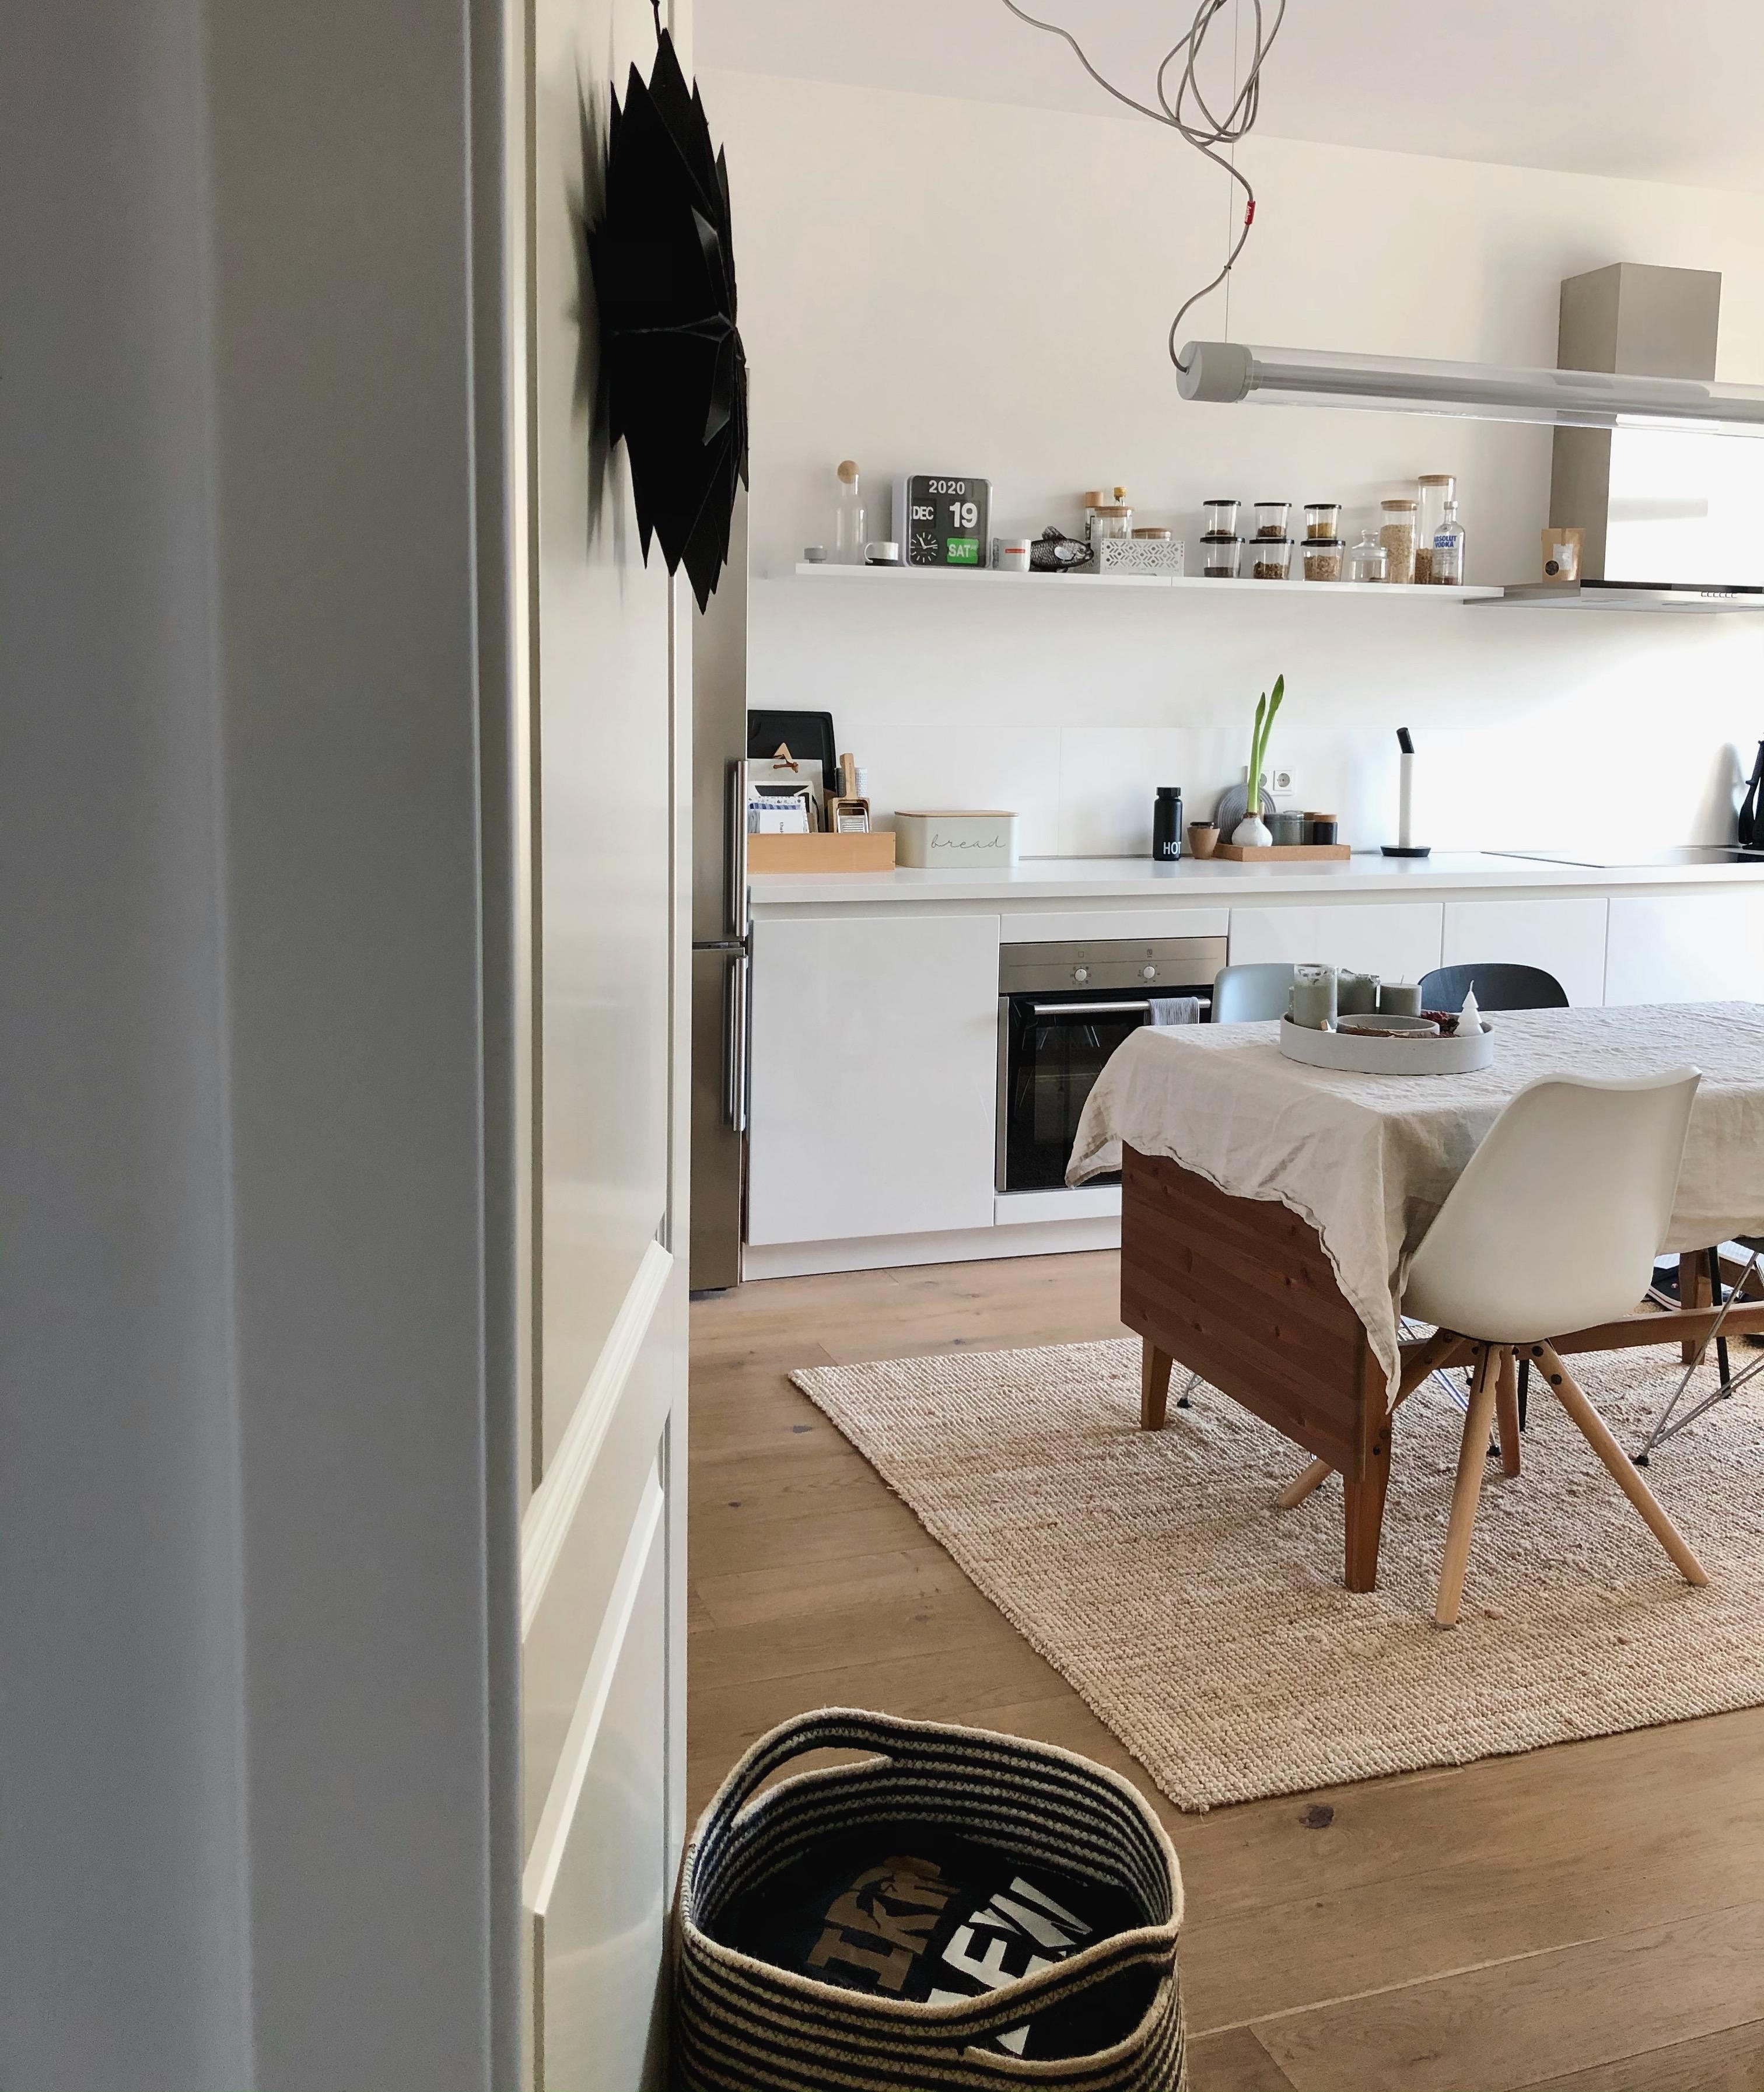 #Jahresende #Küche #kitchen #kitcheninspo #interior #interiordesign #home #white #whiteliving #essbereich #couchstyle